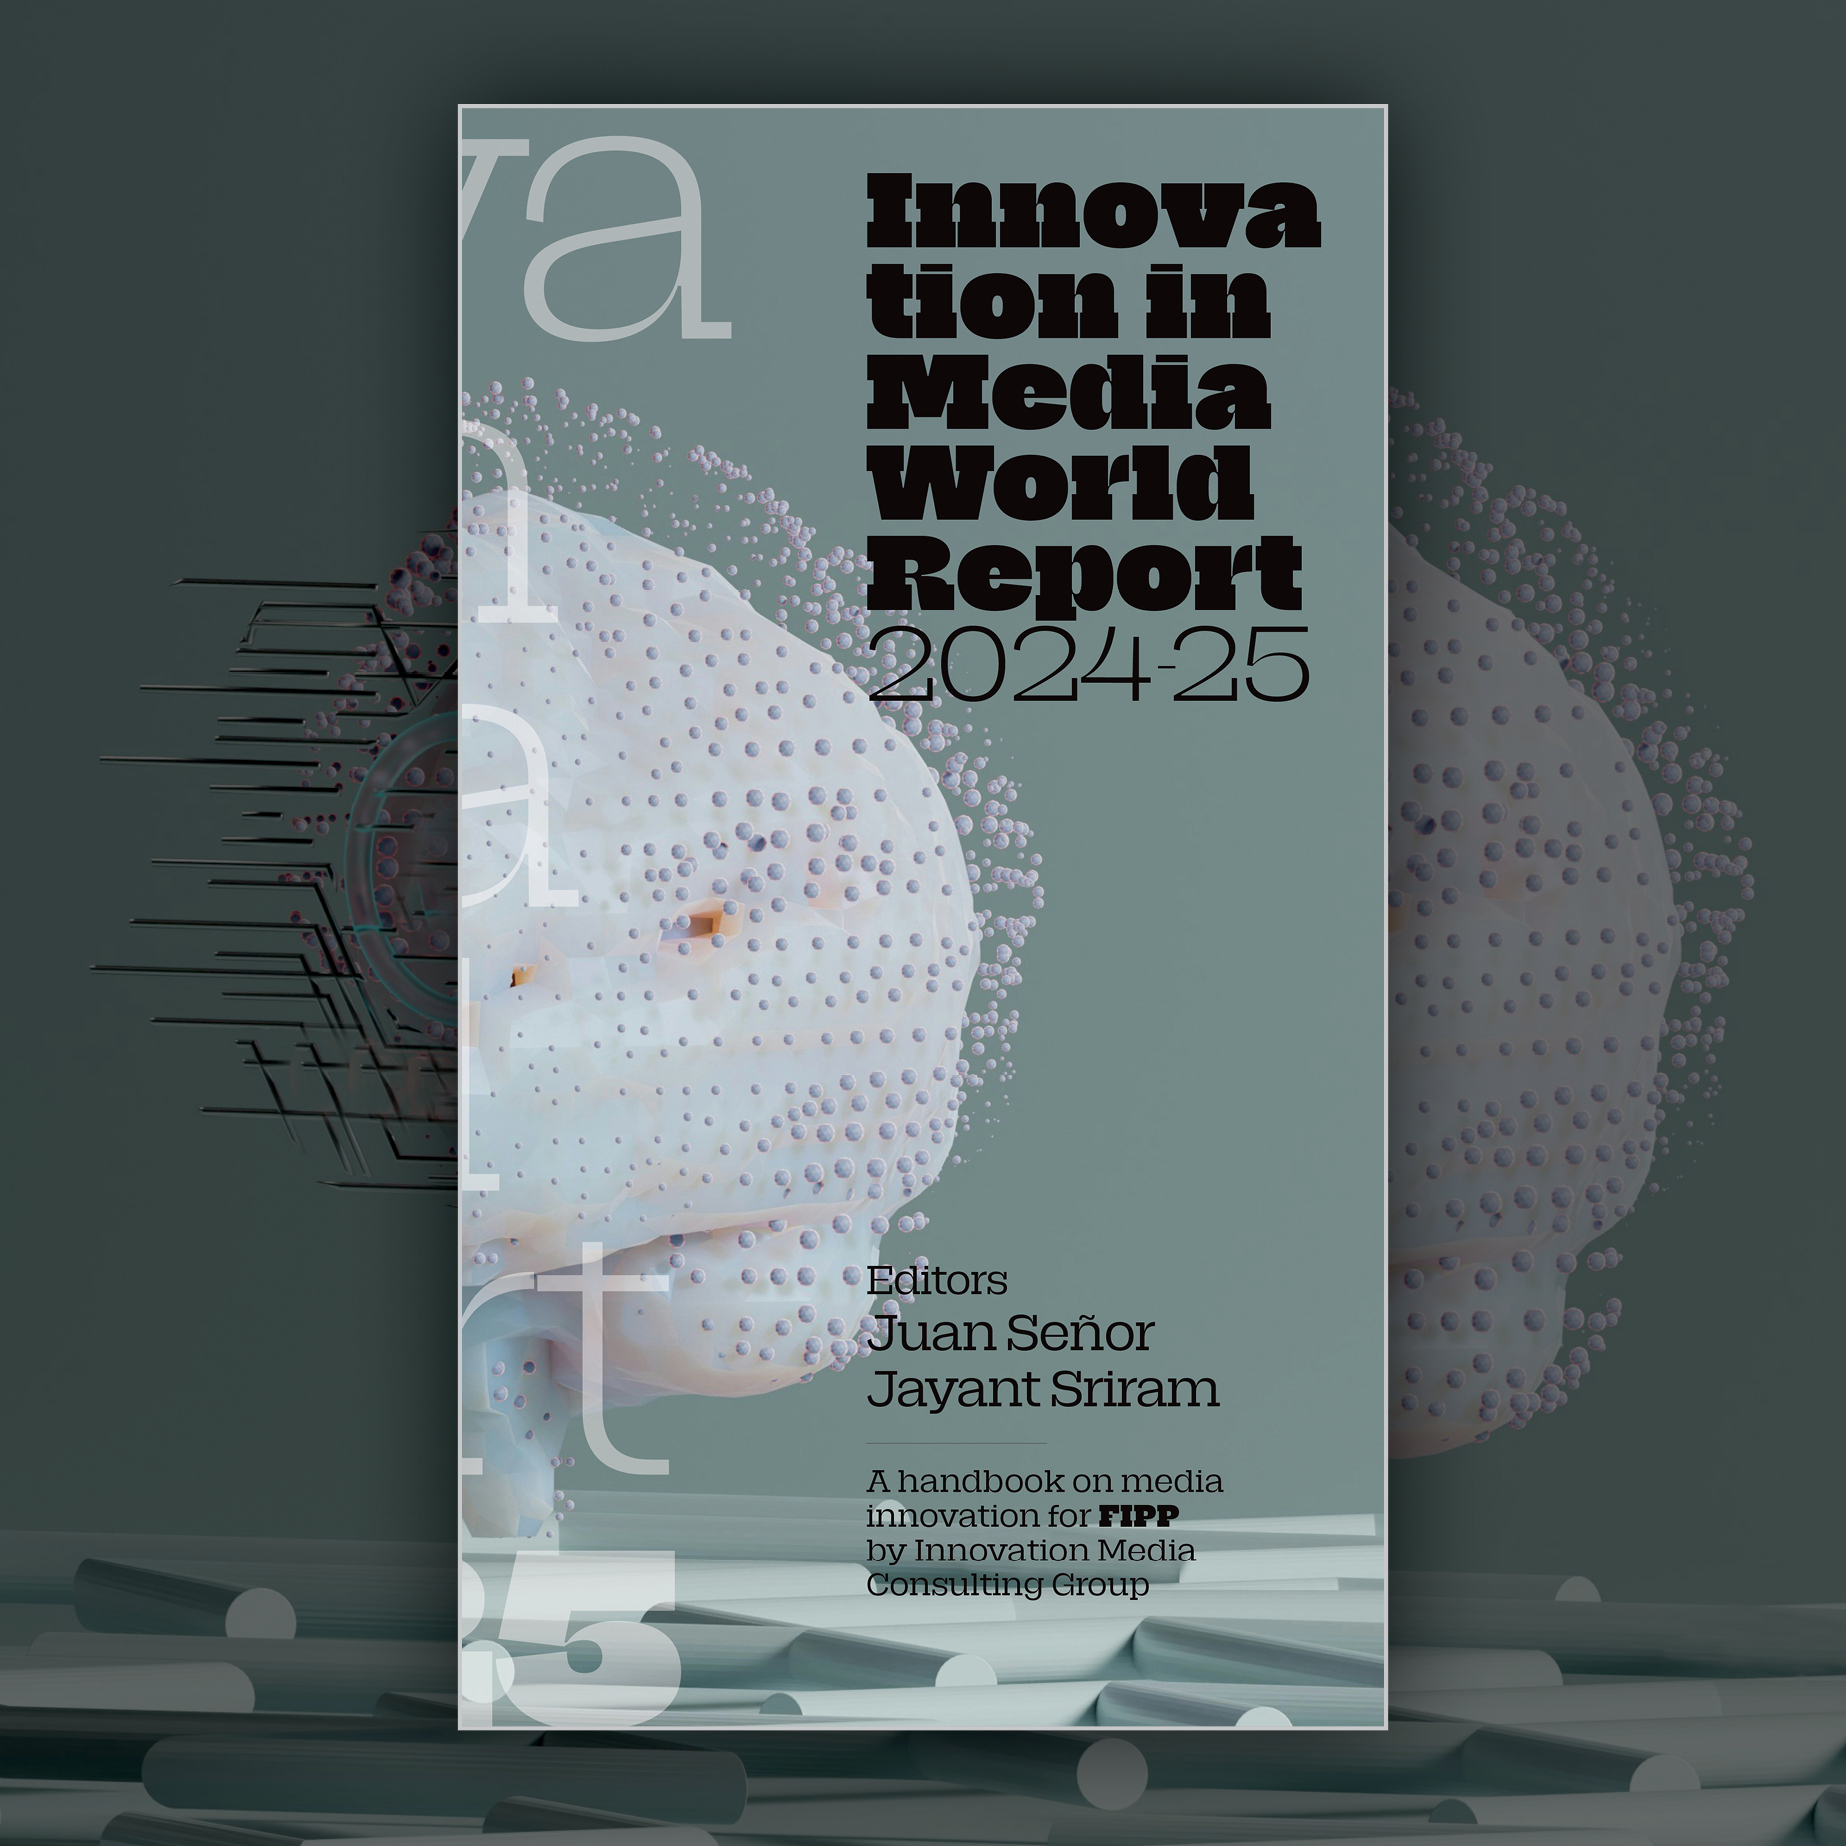 INNOVATION IN MEDIA 2024-25 WORLD REPORT